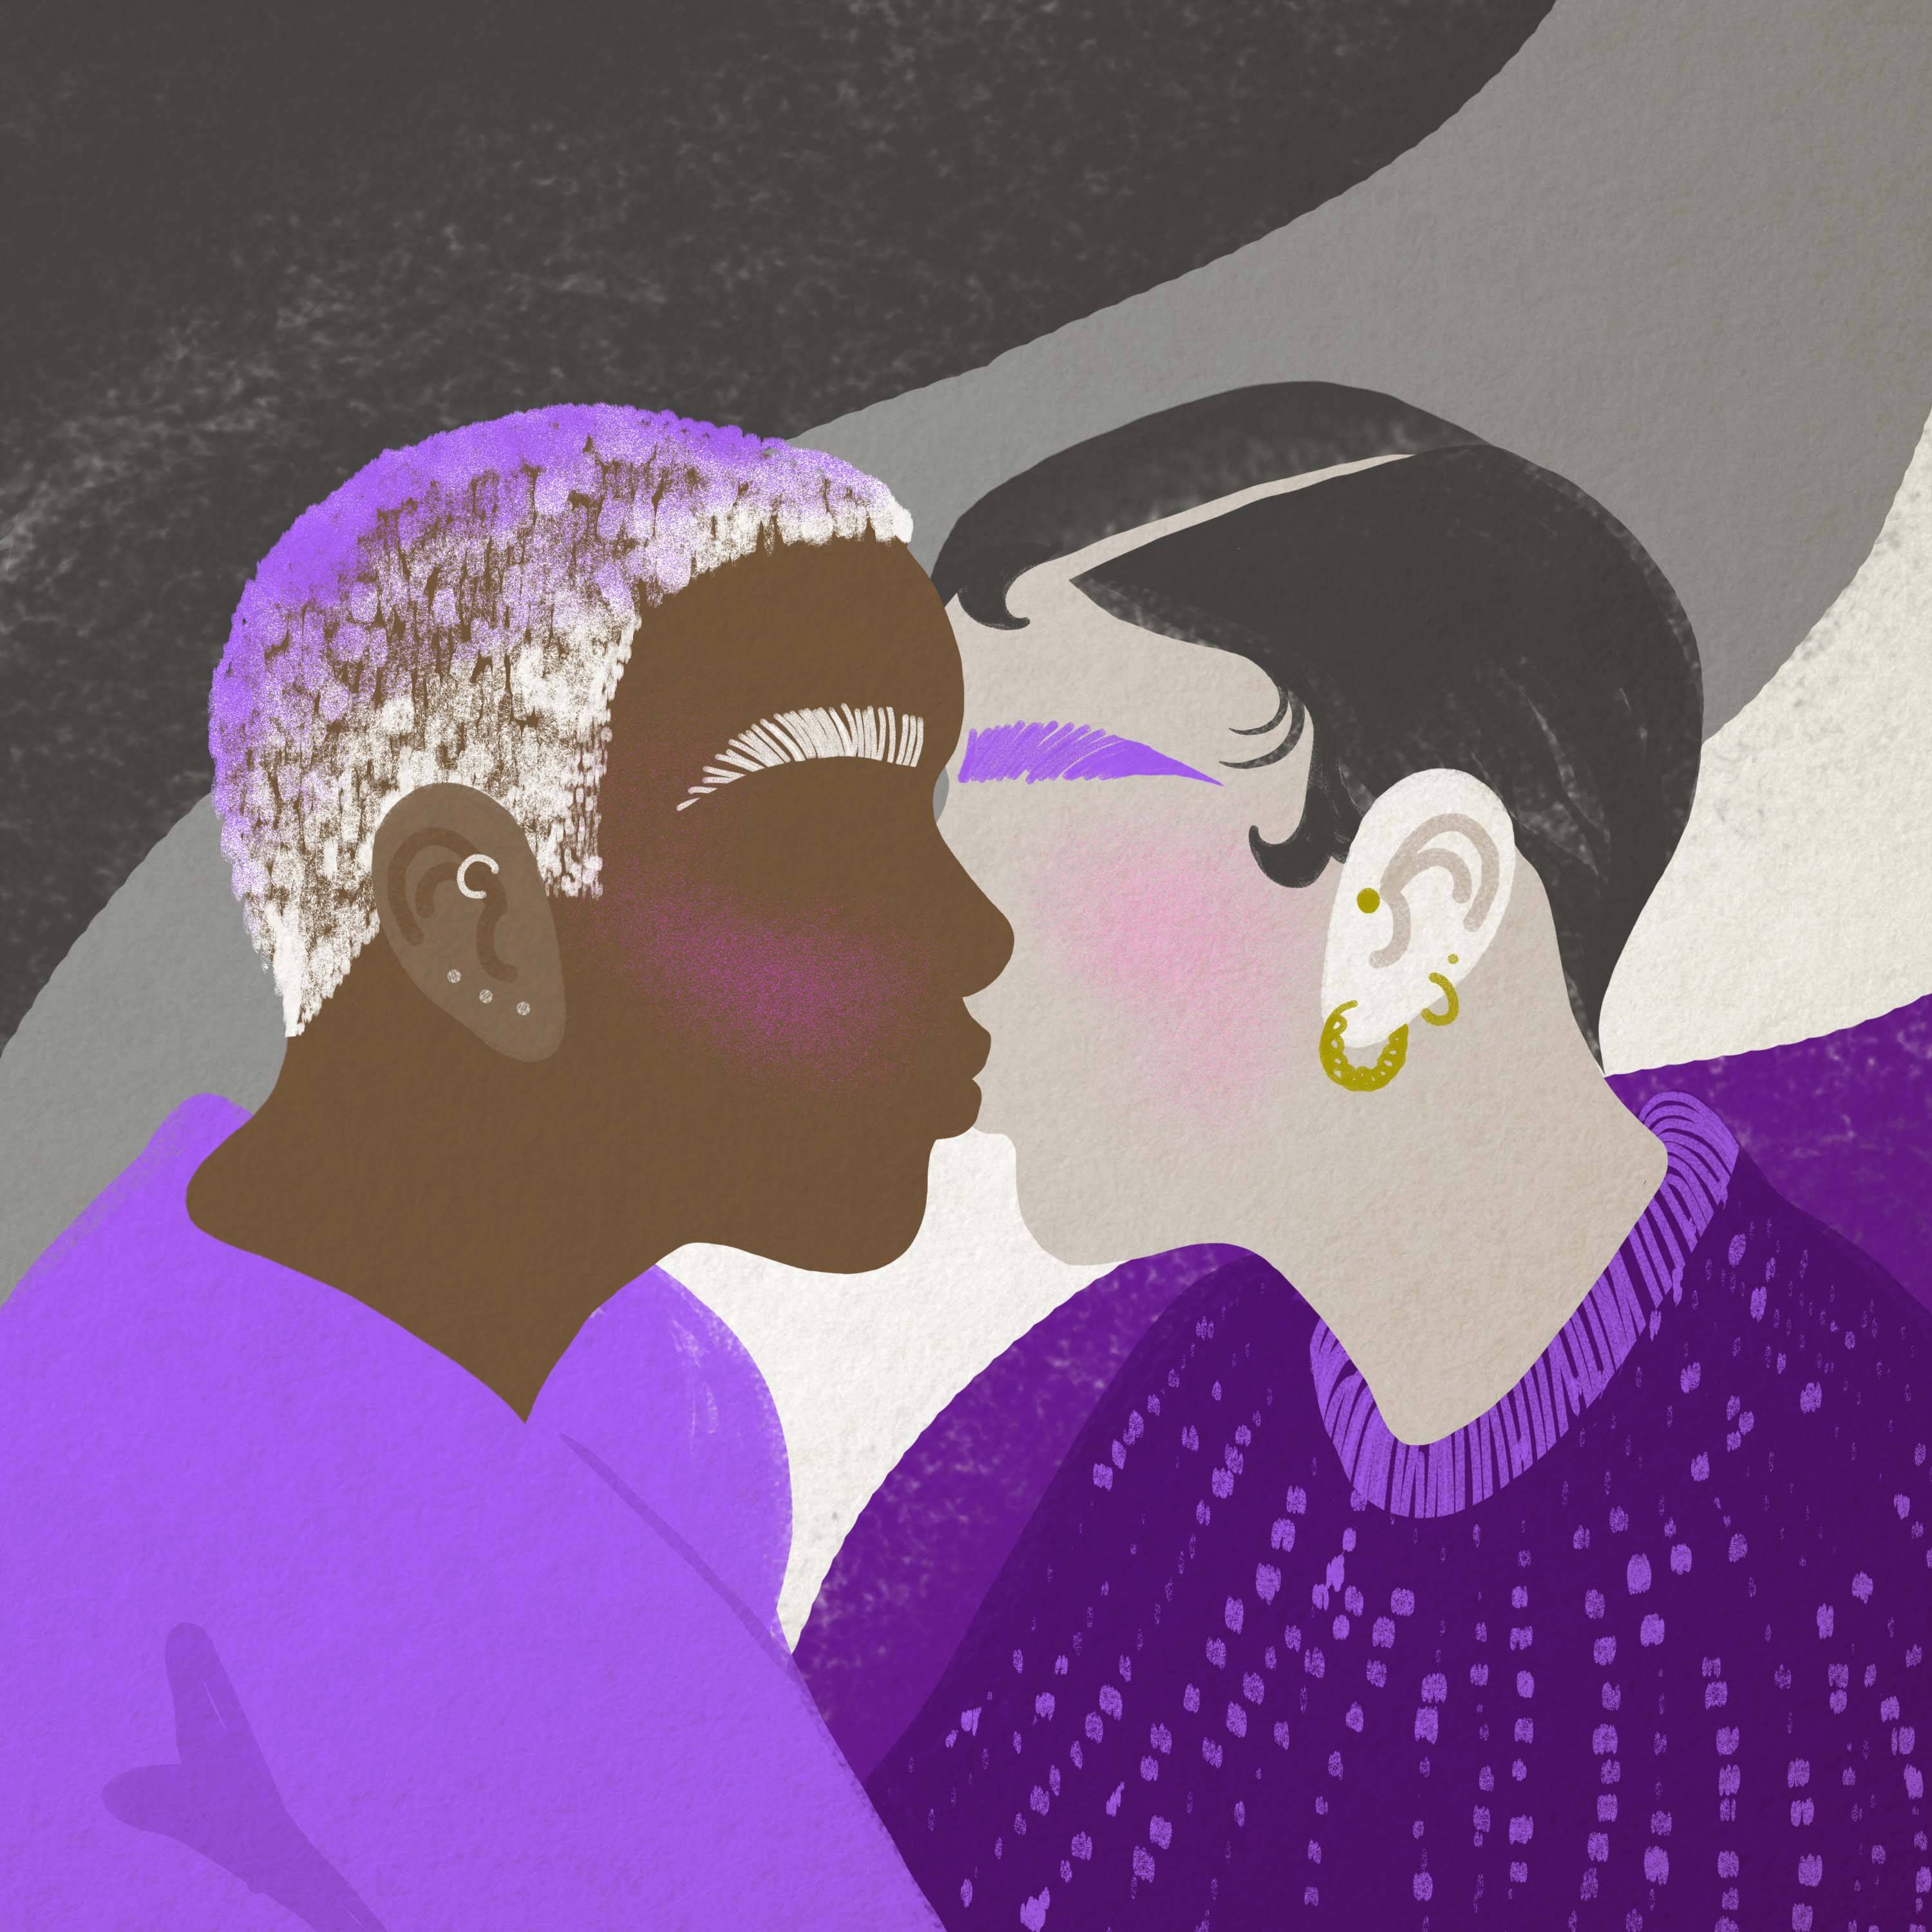 Ilustracja przedstawiająca profile dwóch postaci, które stykają się twarzami, jedna ma ciemną skórę i wyraźnie zarysowane brwi, druga jest biała i ma kolczyki w uchu. Aseksualność